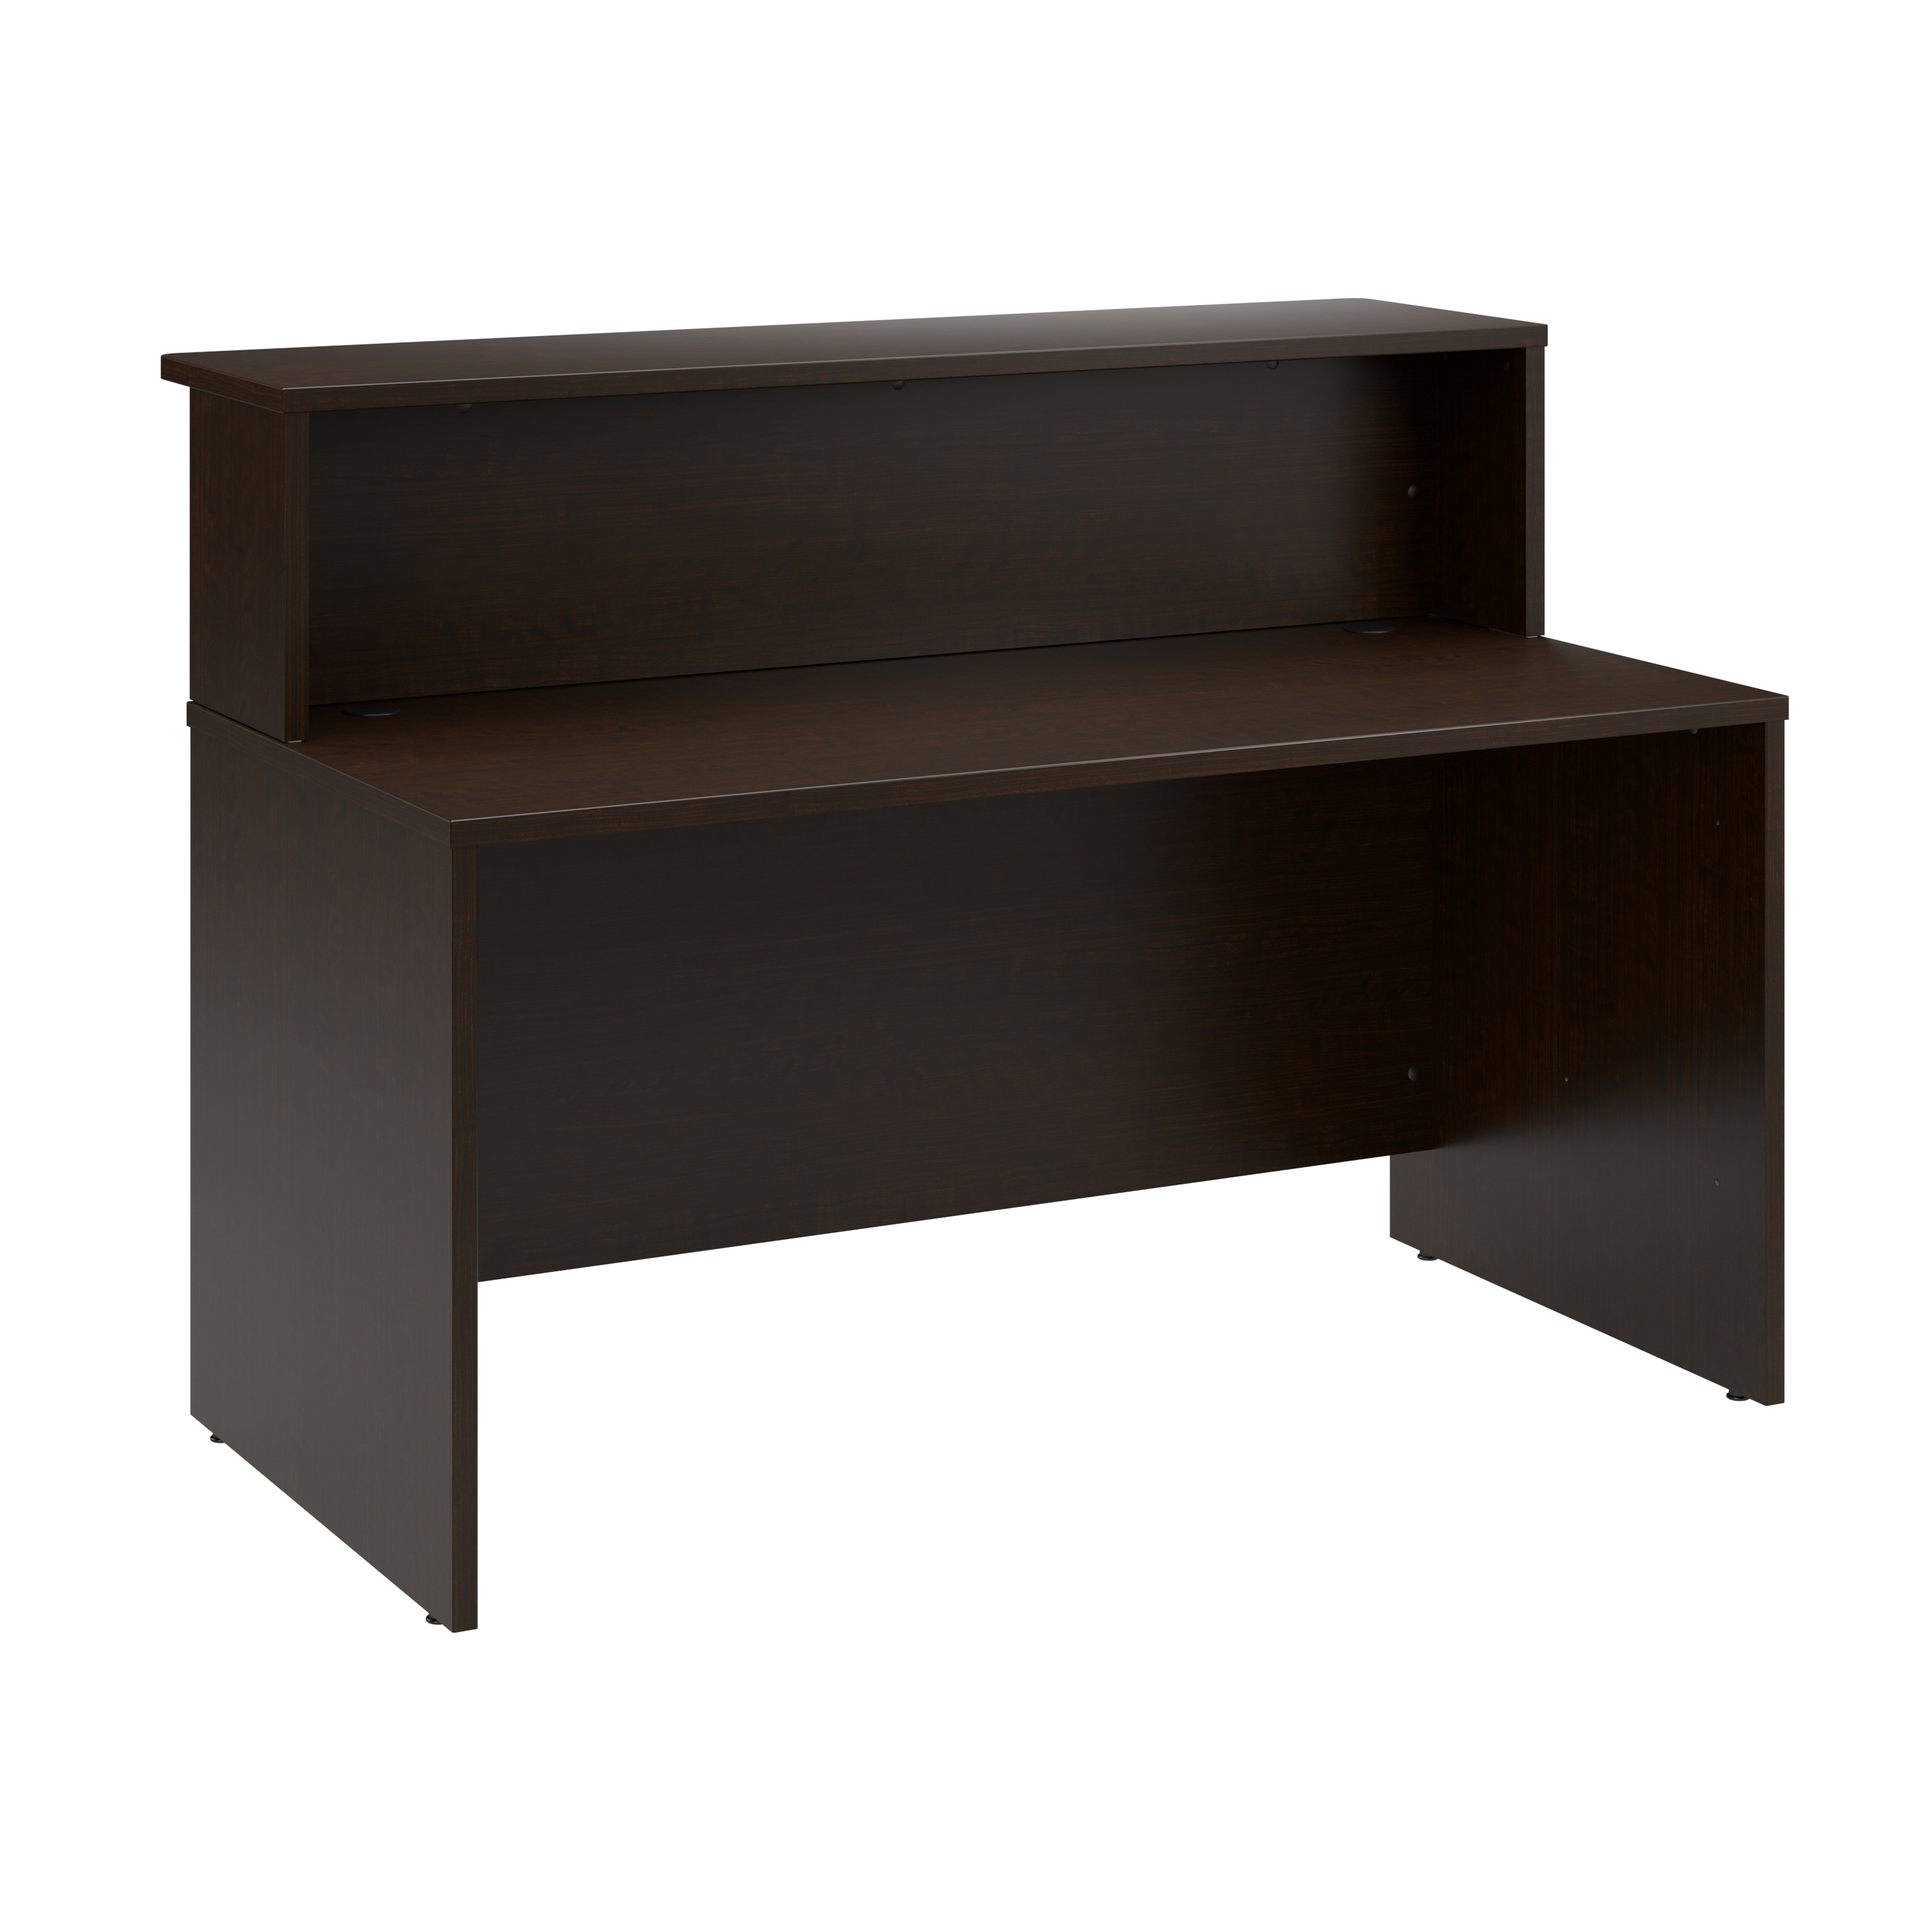 Shop Bush Business Furniture Arrive 60W x 30D Reception Desk with Shelf 02 ARV001MR #color_mocha cherry